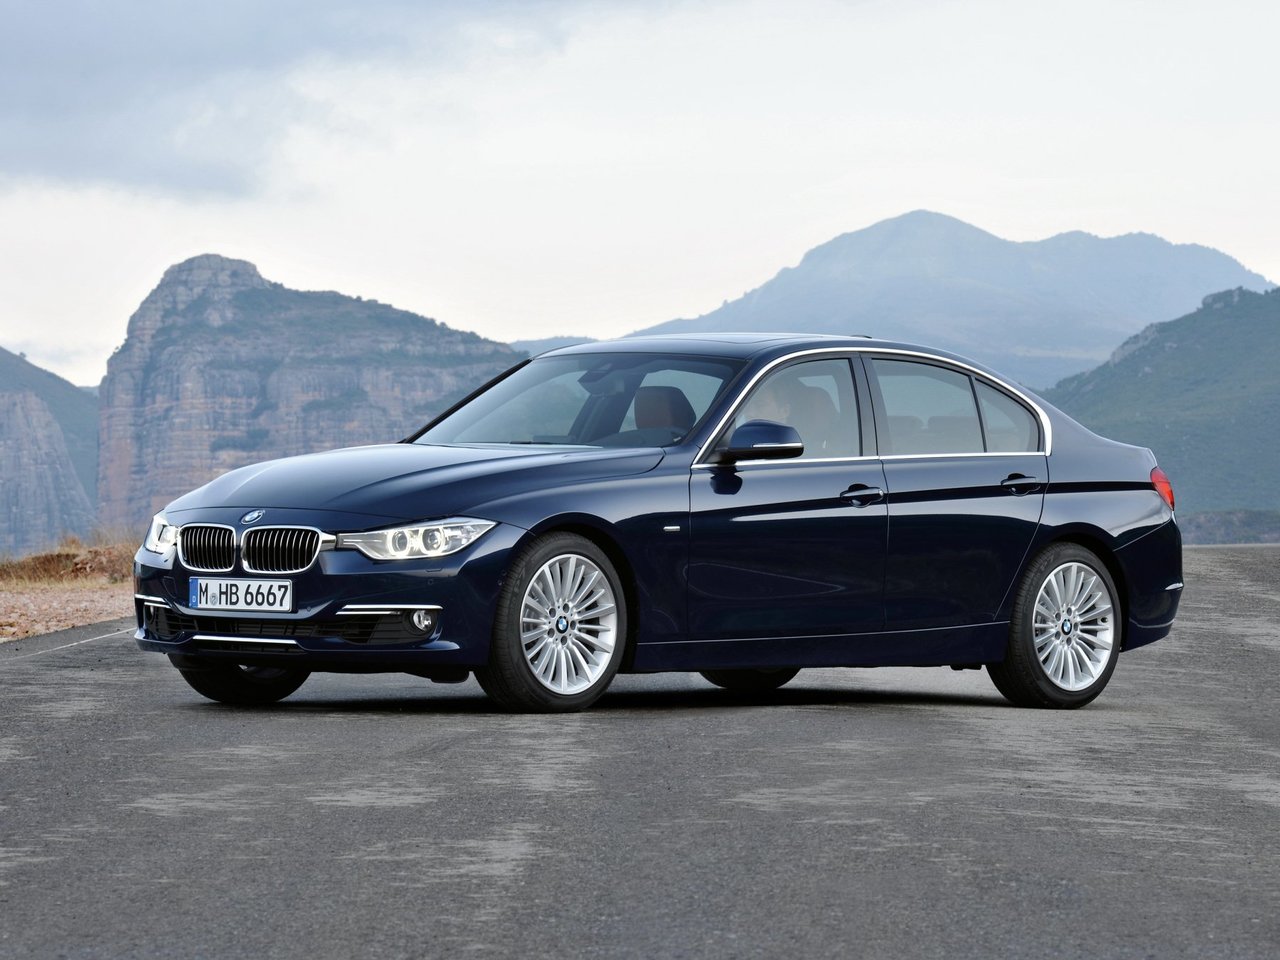 BMW 3 Серии, 2011 - 2016, VI (F3x), седан: купить, технические характеристики, отзывы и объявления